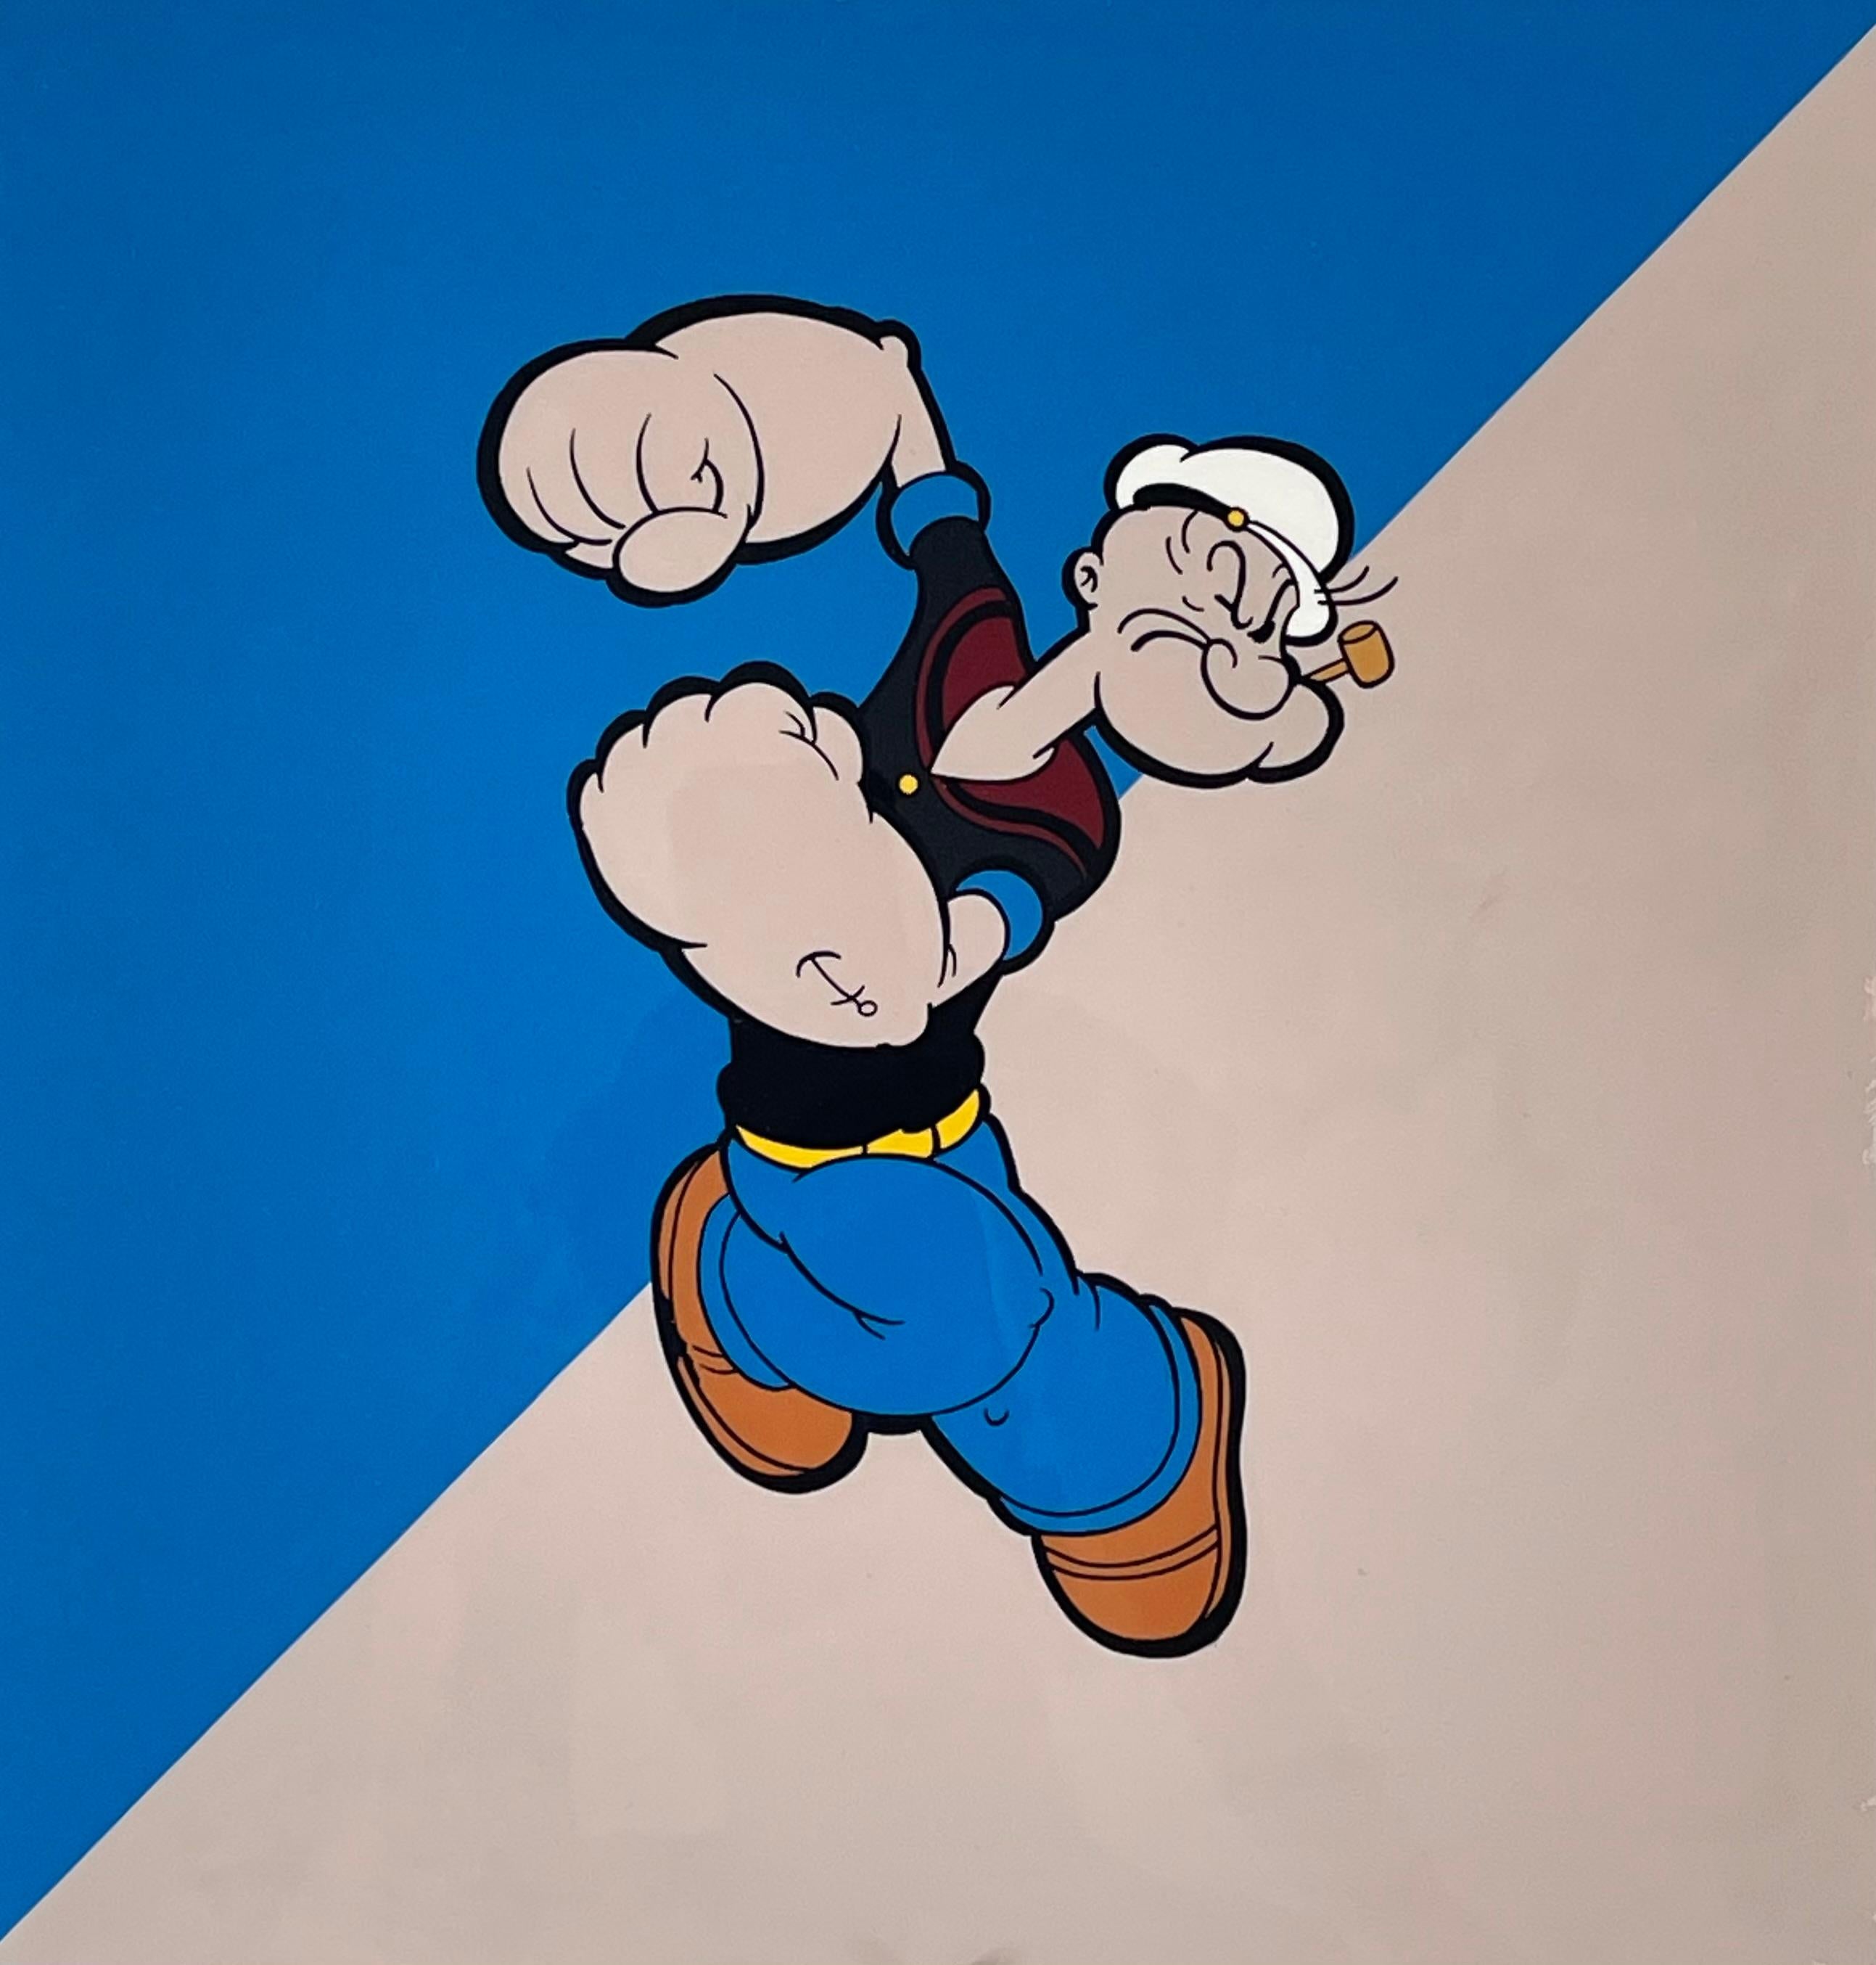 Peinture "Popeye" 20" x 20" pouces par Antonio Pelayo

Médium : Encre acrylique et peinture sur acétate d'animation

Taille de l'image : 13" x 13" pouces
Taille encadrée : 20" x 20" pouces

L'artiste Antonio Pelayo, né à Glendale, en Californie, et